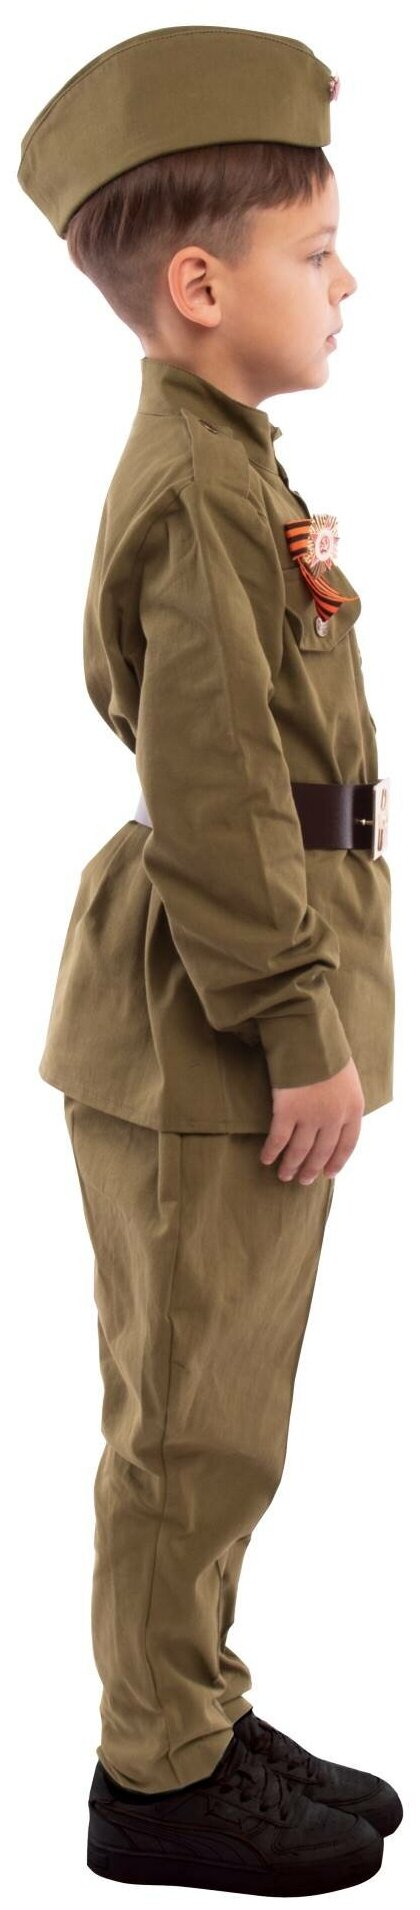 Солдат хлопок брюки Галифе (2164 к-22), размер 140, цвет мультиколор, бренд Пуговка